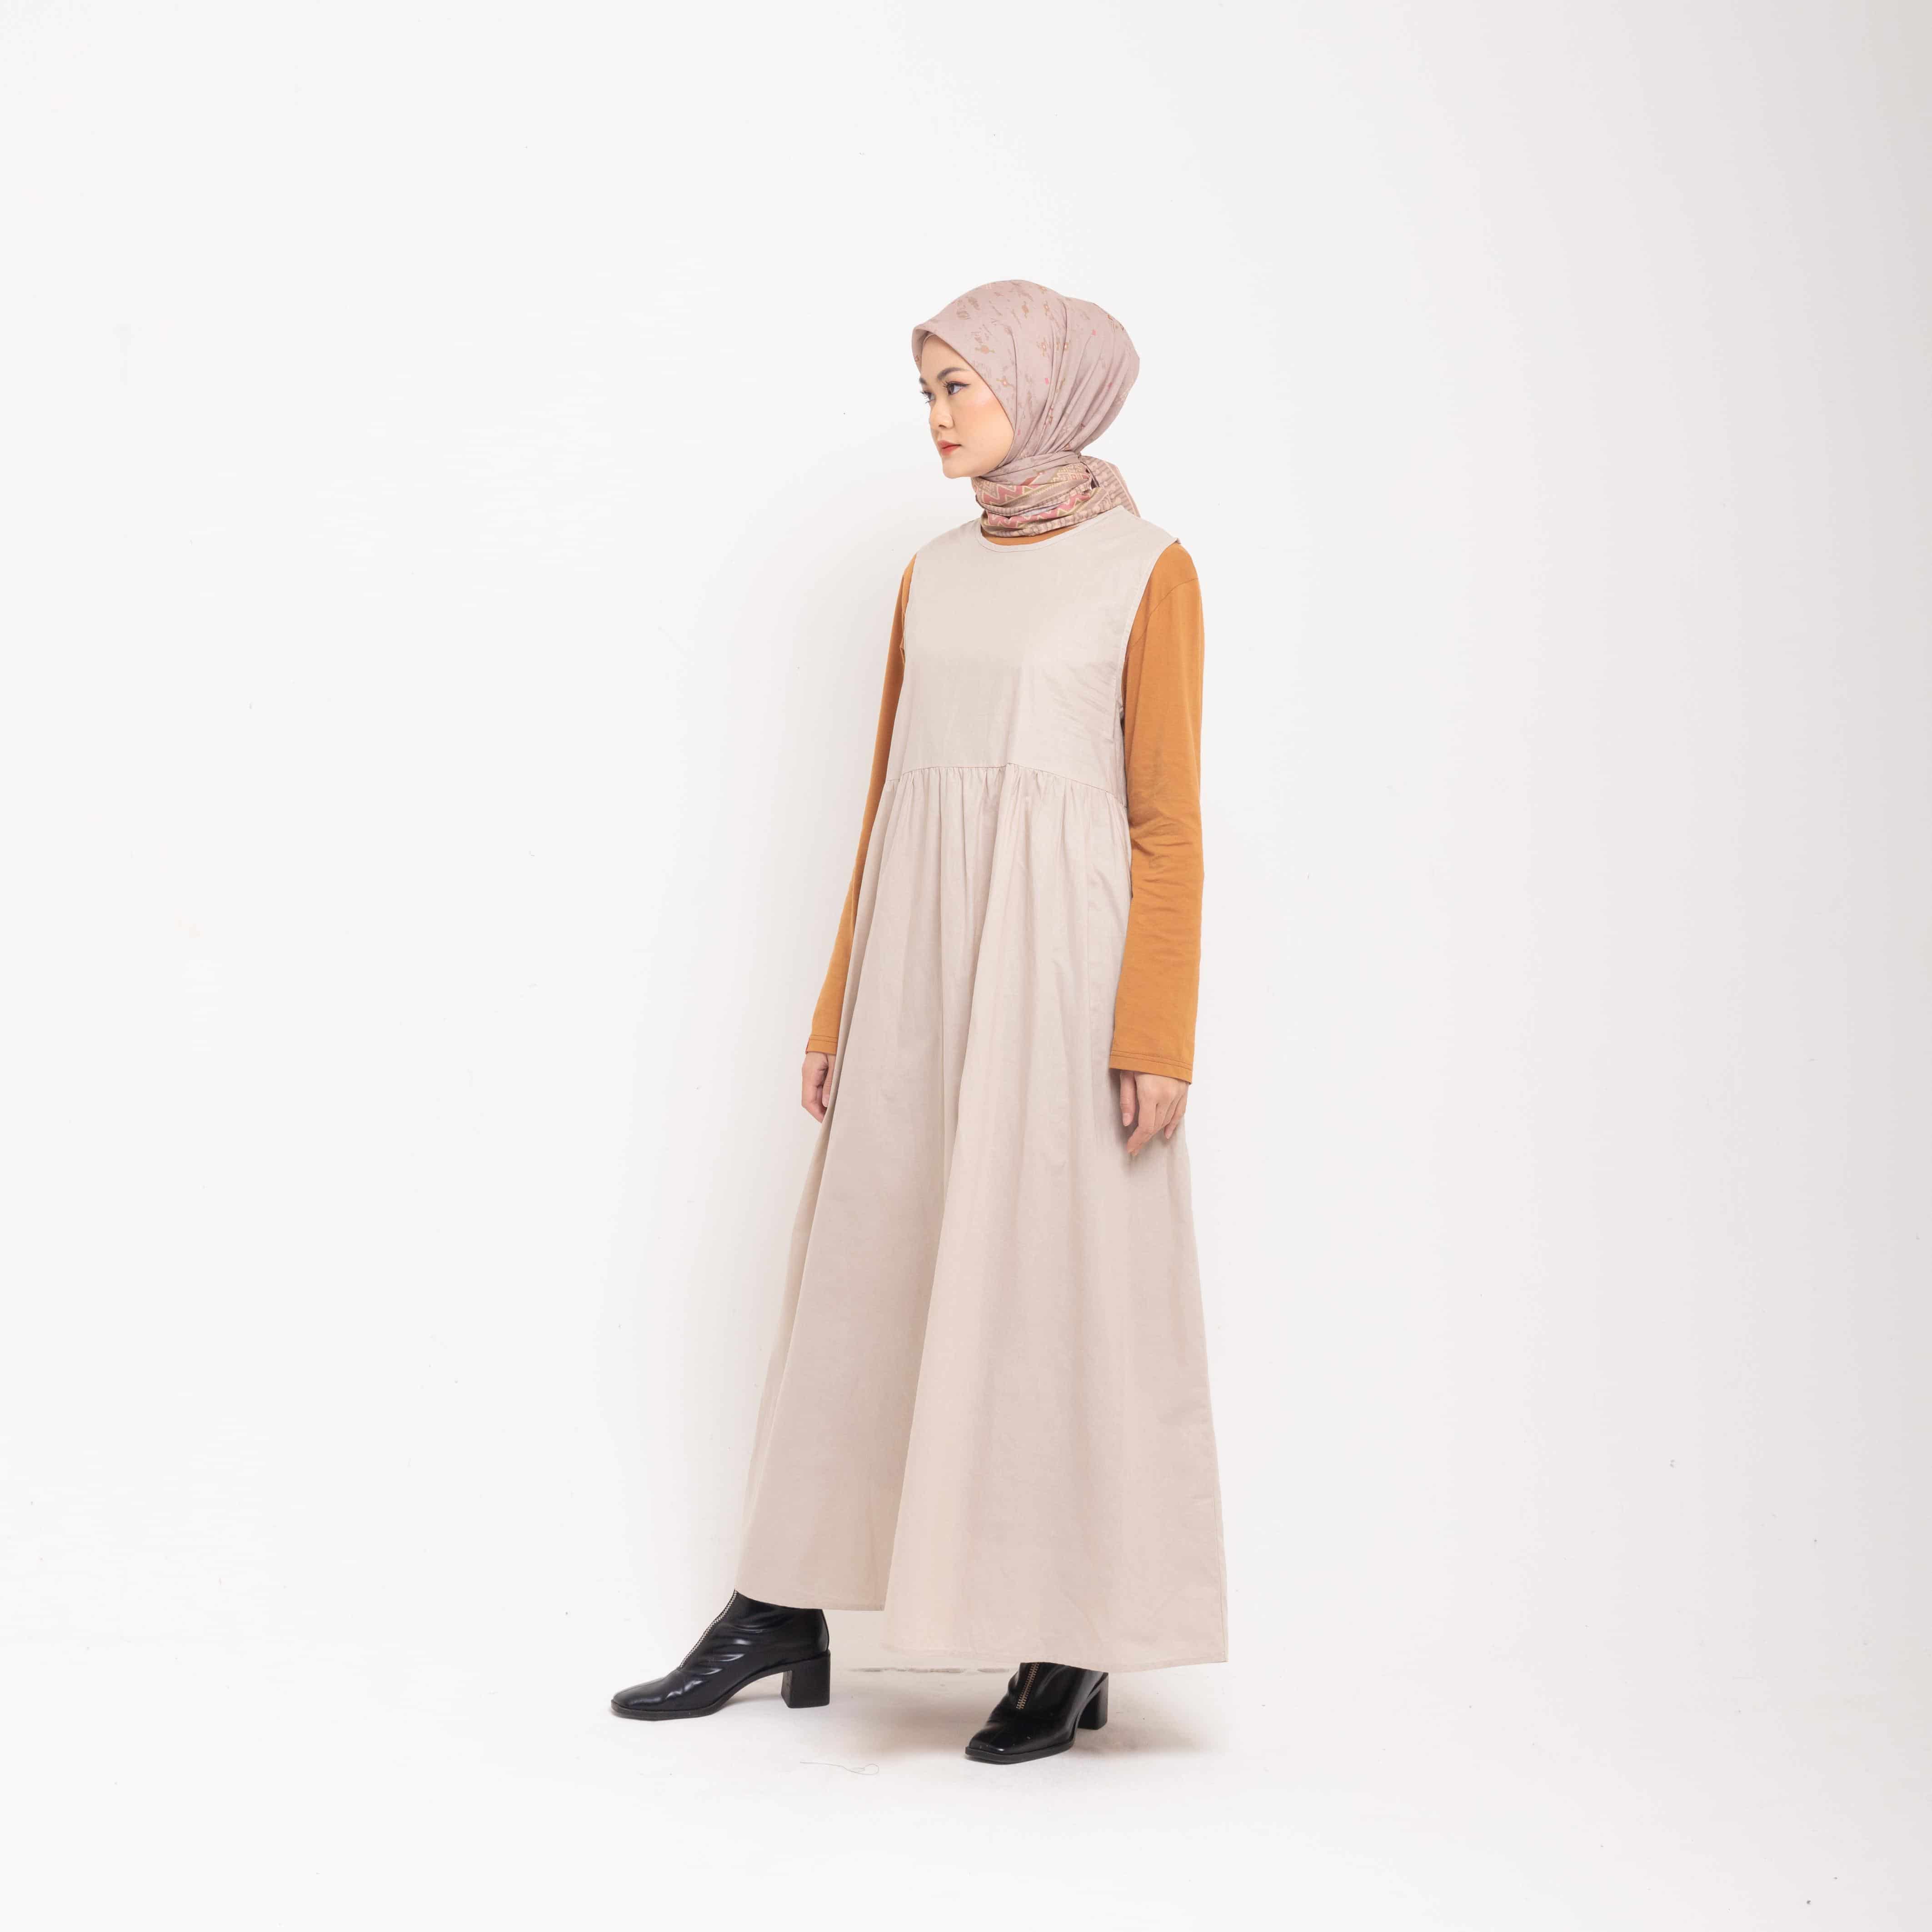 Dress Wanita Muslim Dauky Inner Dress Sleeveless Ruffles - Khaky